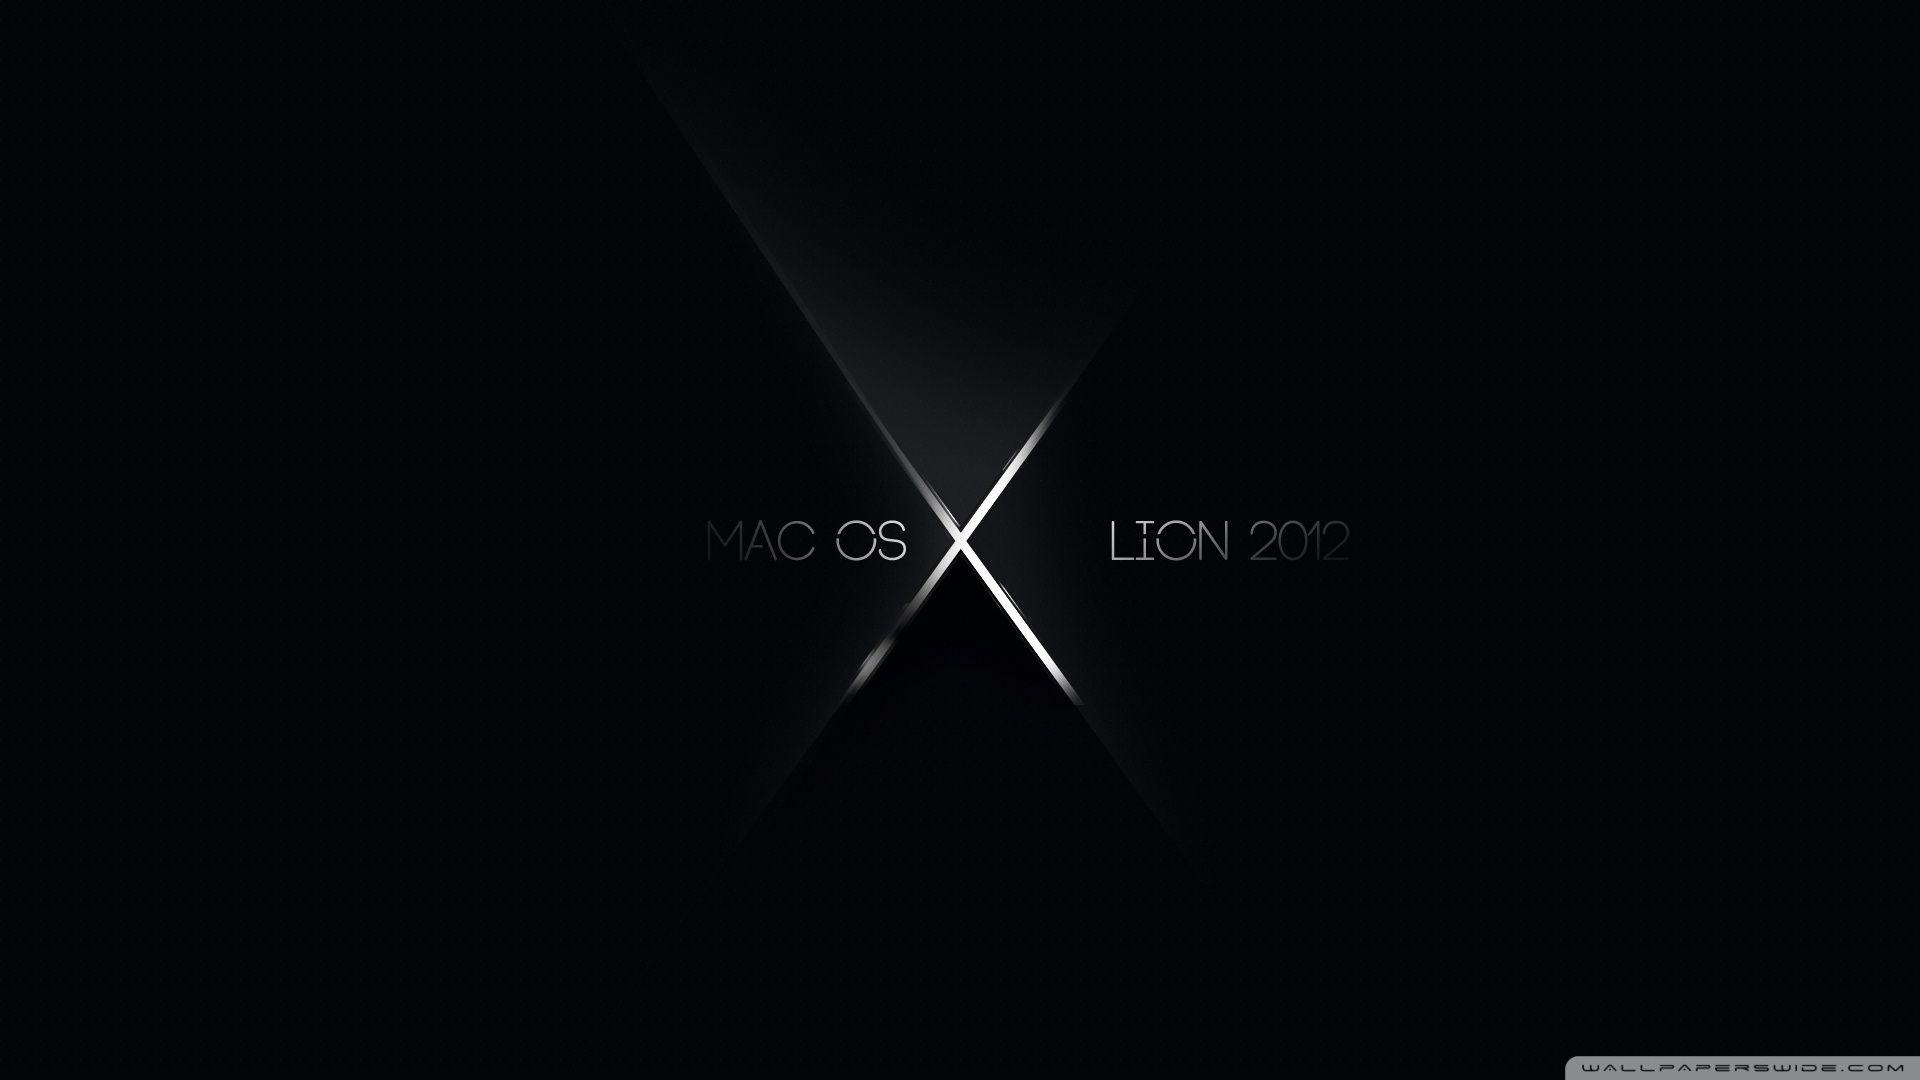 Download Mac Os X Lion 2013 Wallpaper 1920x1080